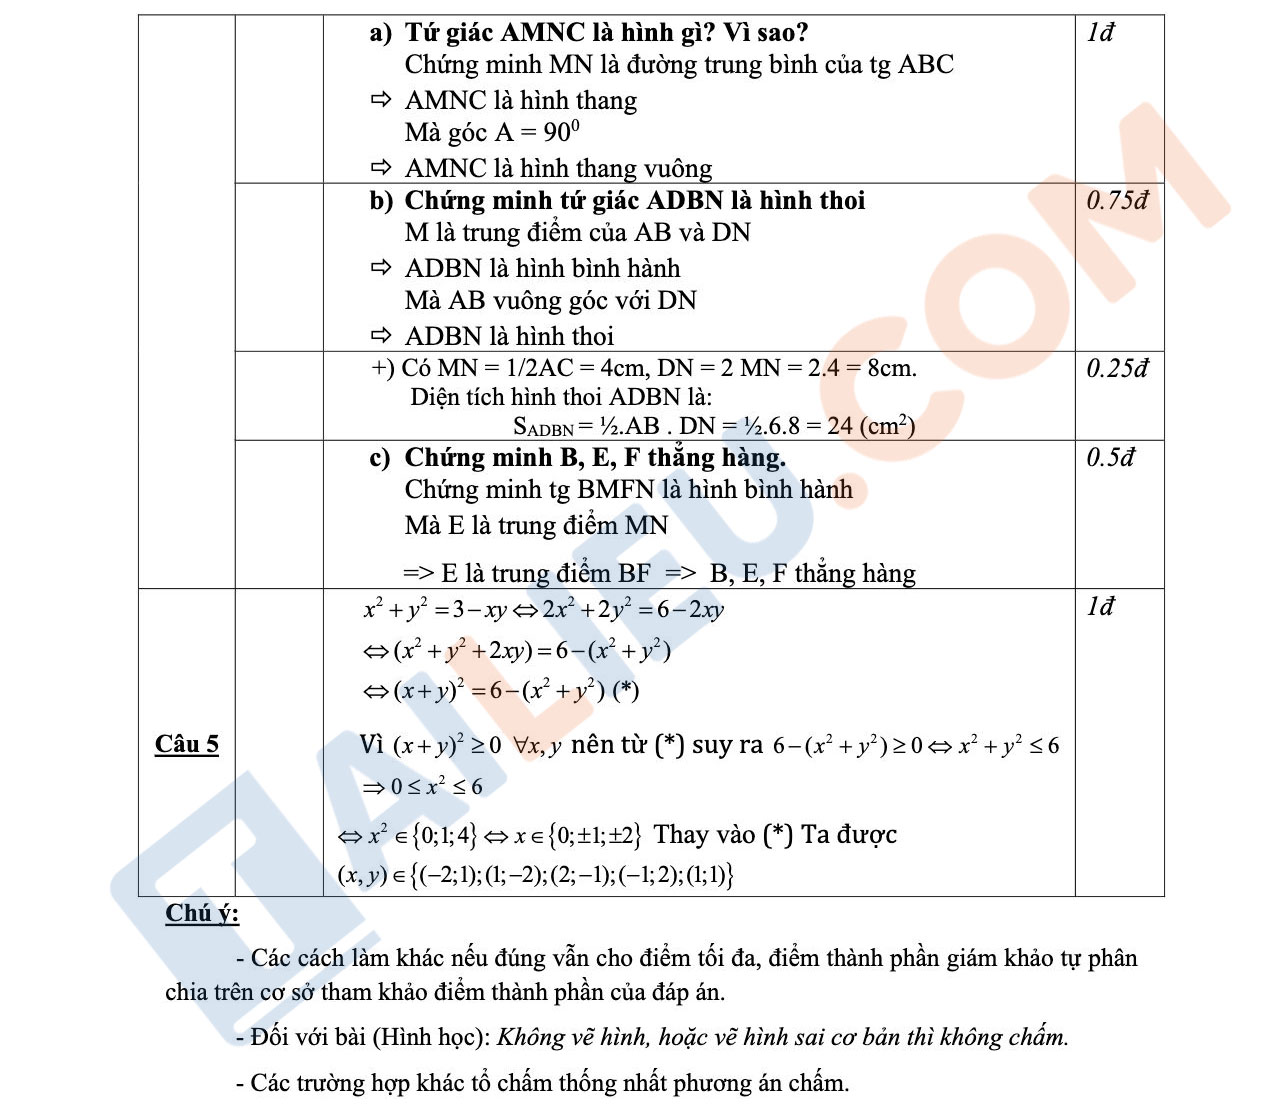 Đáp án đề thi toán lớp 8 học kì 1 năm 2022 - 2023 trường THCS Đông Ninh - Thanh Hóa